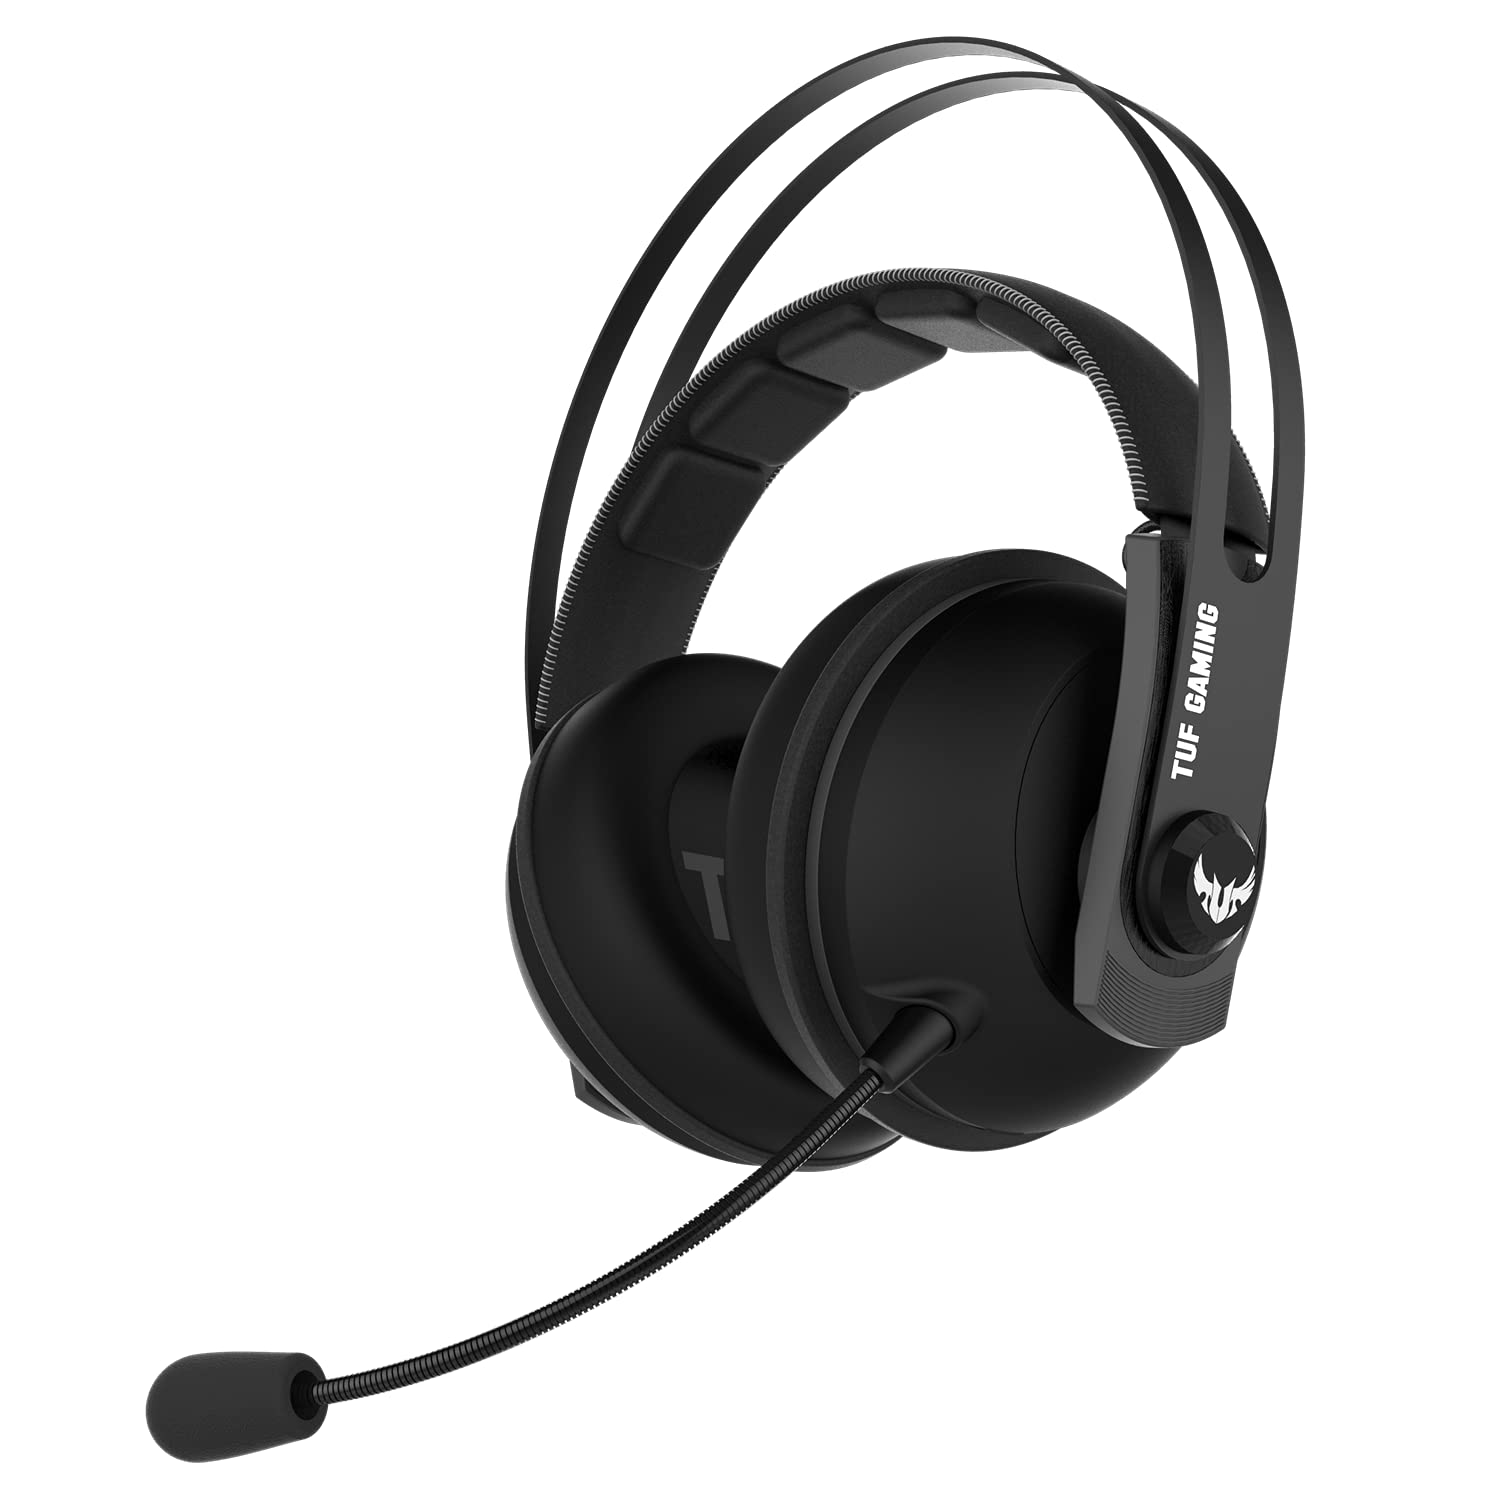 ASUS TUF Gaming H7 Headset (kabelgebunden, 7.1 Virtual-Surround-Sound, geeignet für PC, PS4, Xbox) schwarz / gun metal